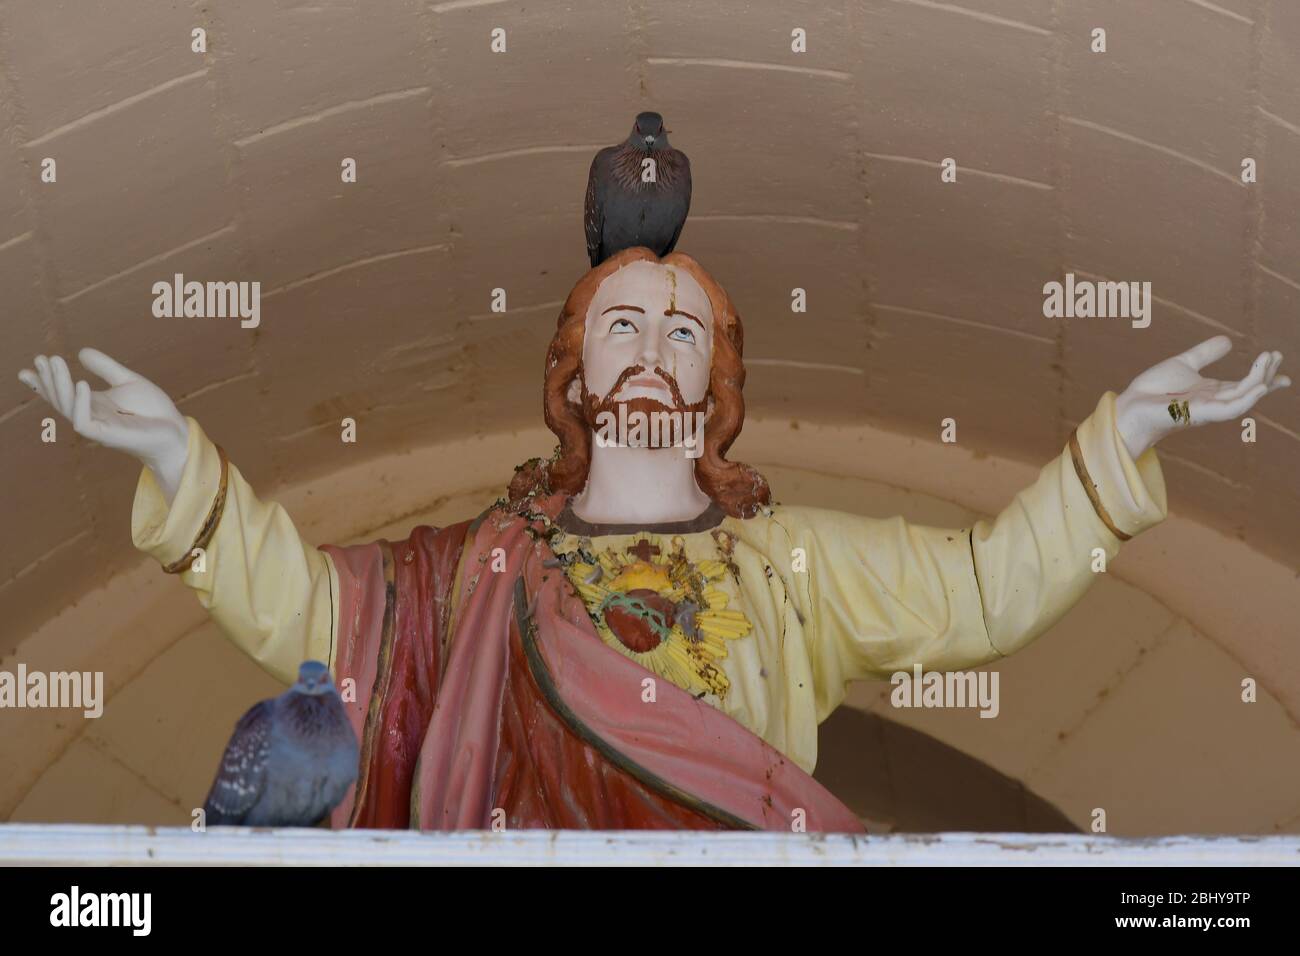 Estatua de Jesucristo con los brazos extendidos y paloma roodeando en su cabeza. Pella, Sudáfrica Foto de stock